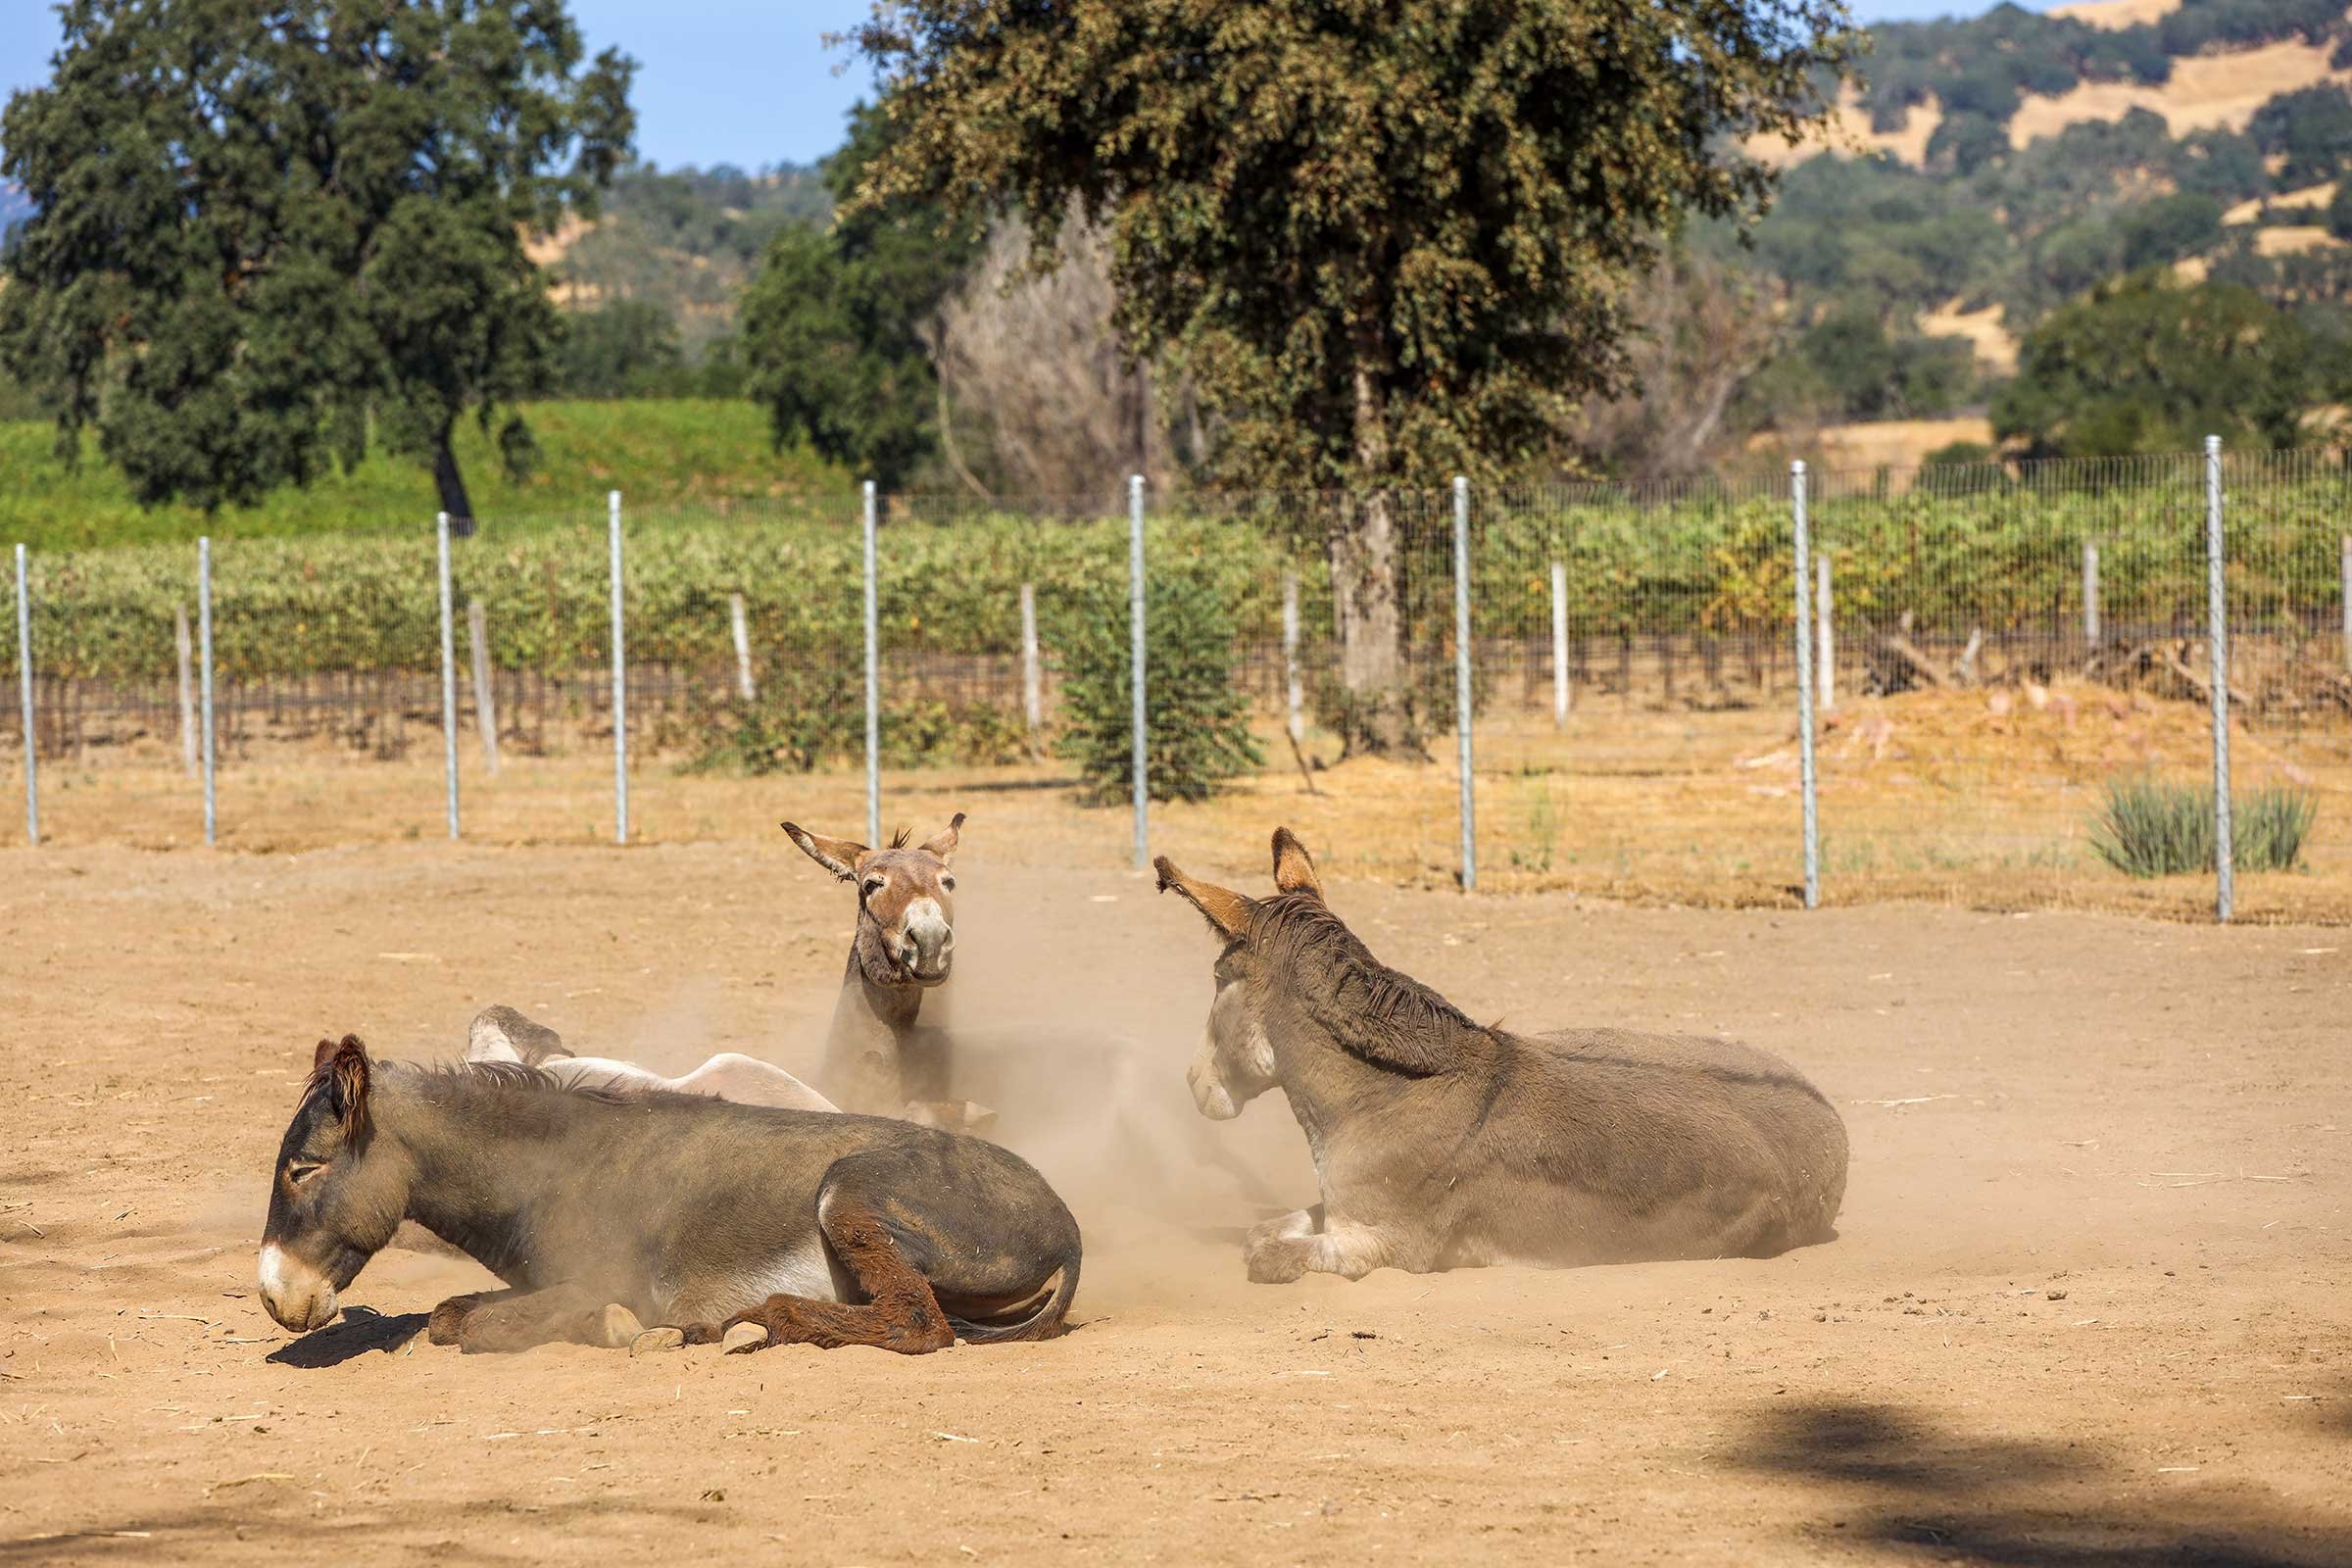 Donkeys enjoying a dust bath